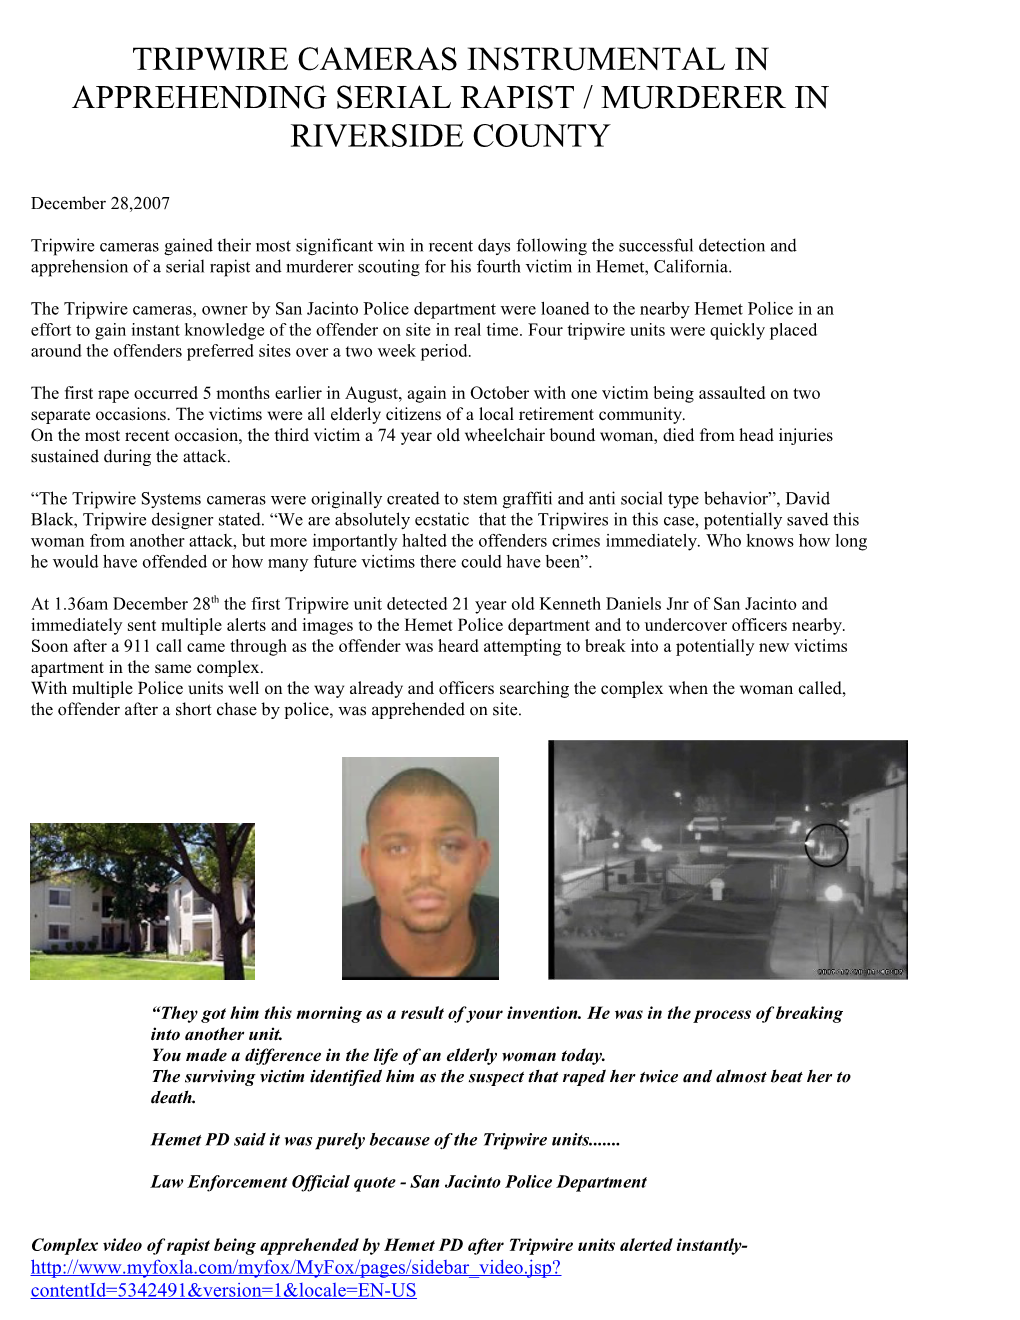 Tripwire Cameras Instrumental in Apprehending Serial Rapist / Murderer in Riverside County